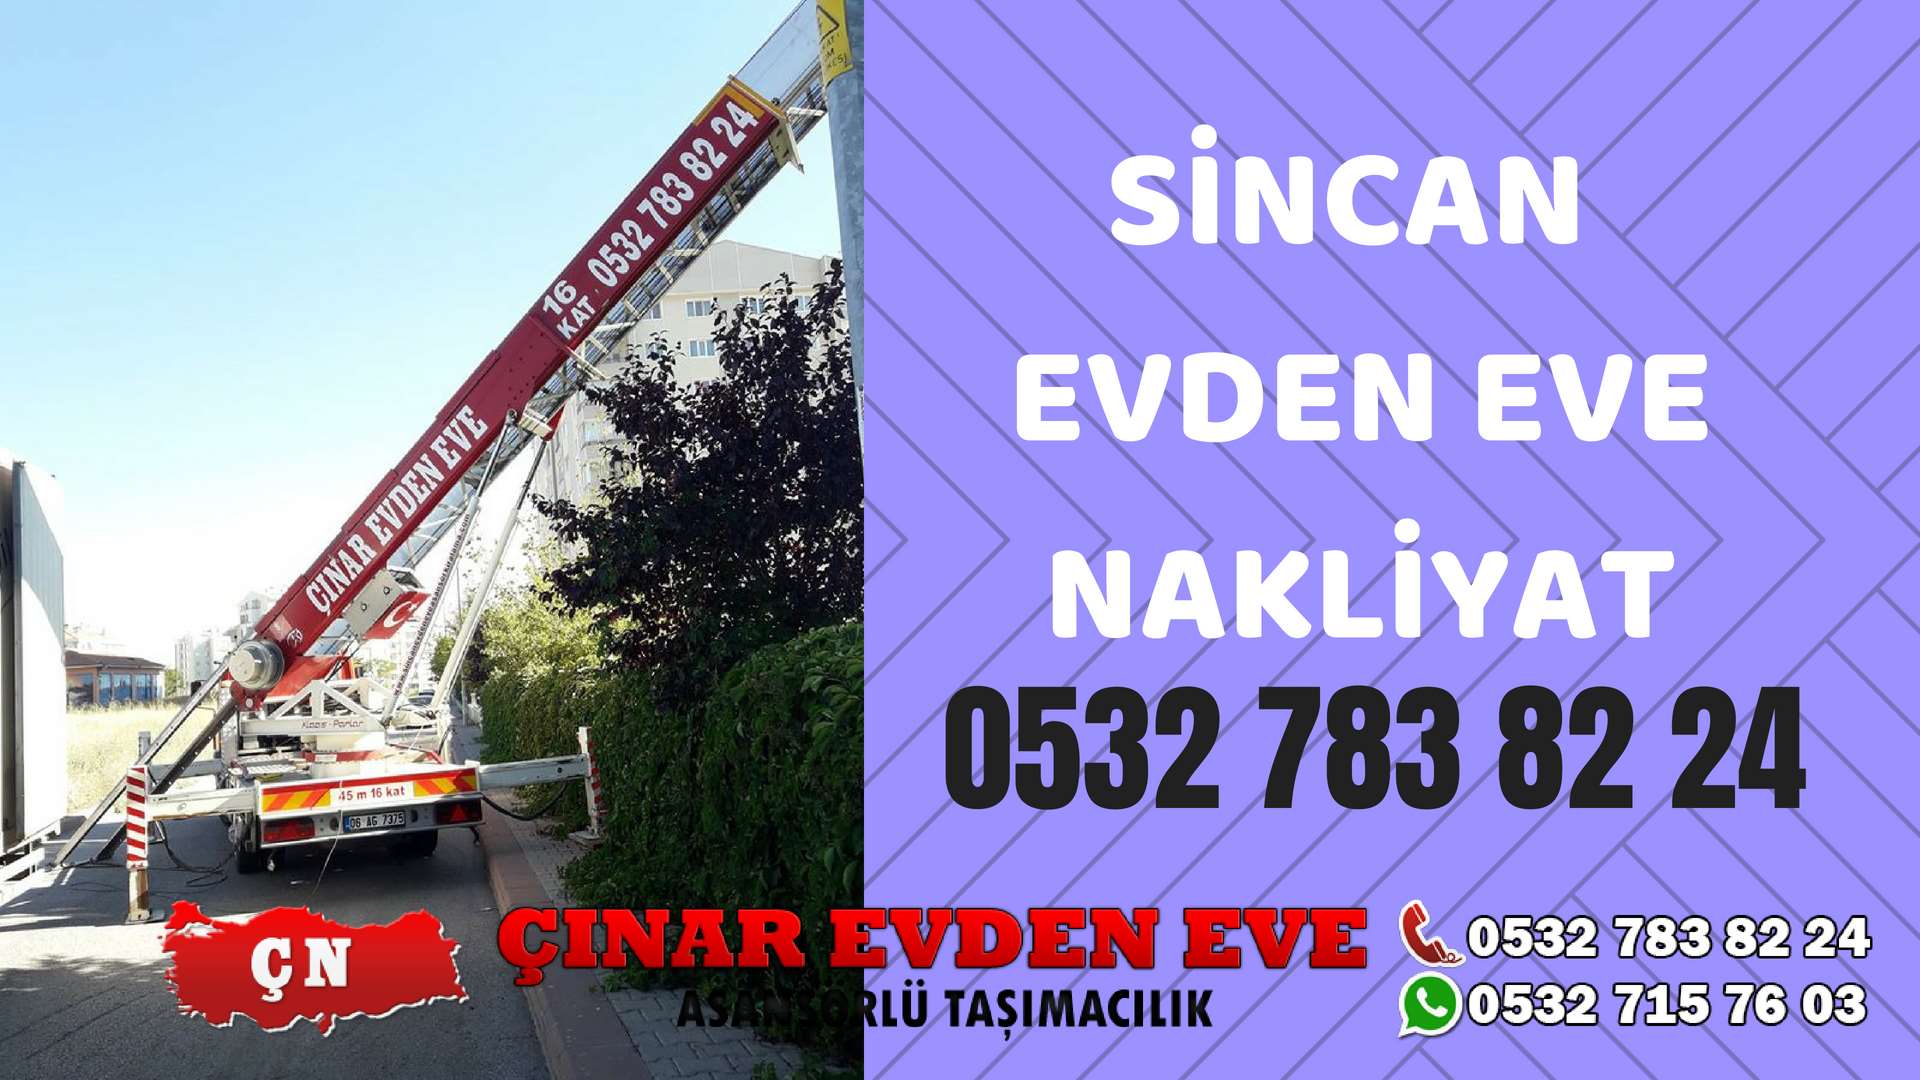 Ankara Elvankent Sincan Evden Eve Nakliyat, Asansörlü Taşıma Çınar Nakliyat Sincan 0532 715 76 03